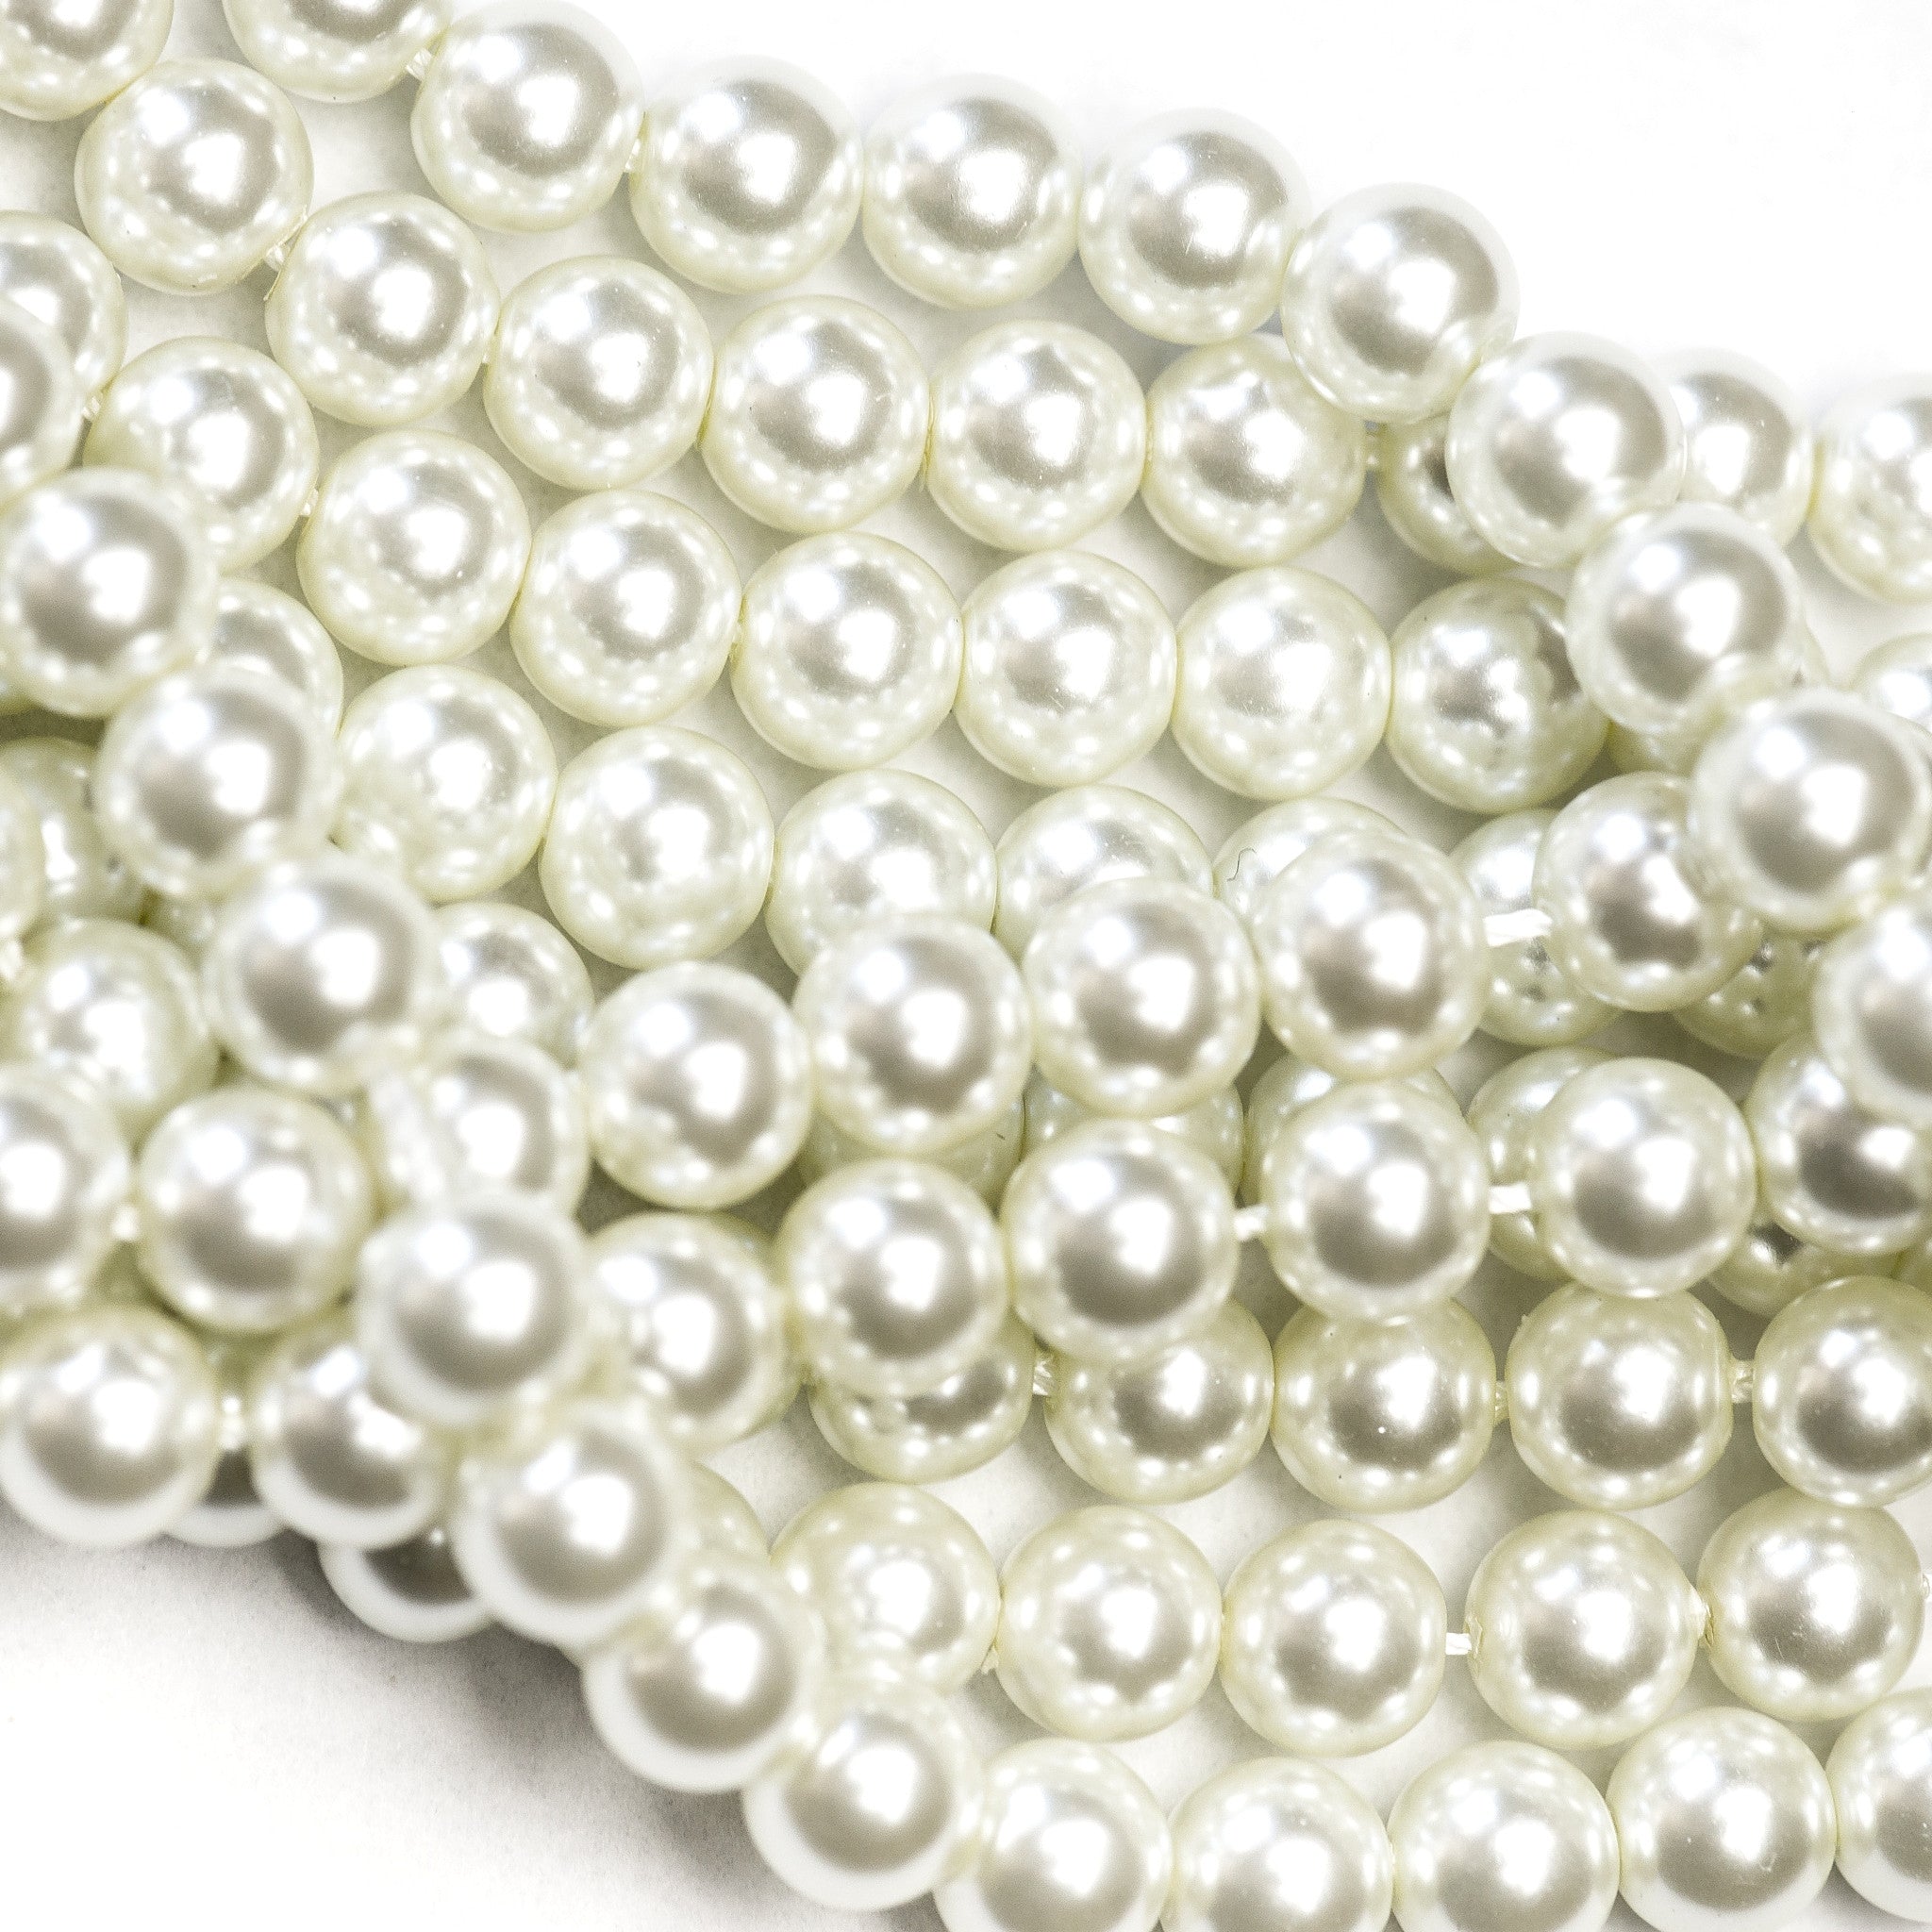 3MM White Glass Pearls 16" (1 dozen strands)